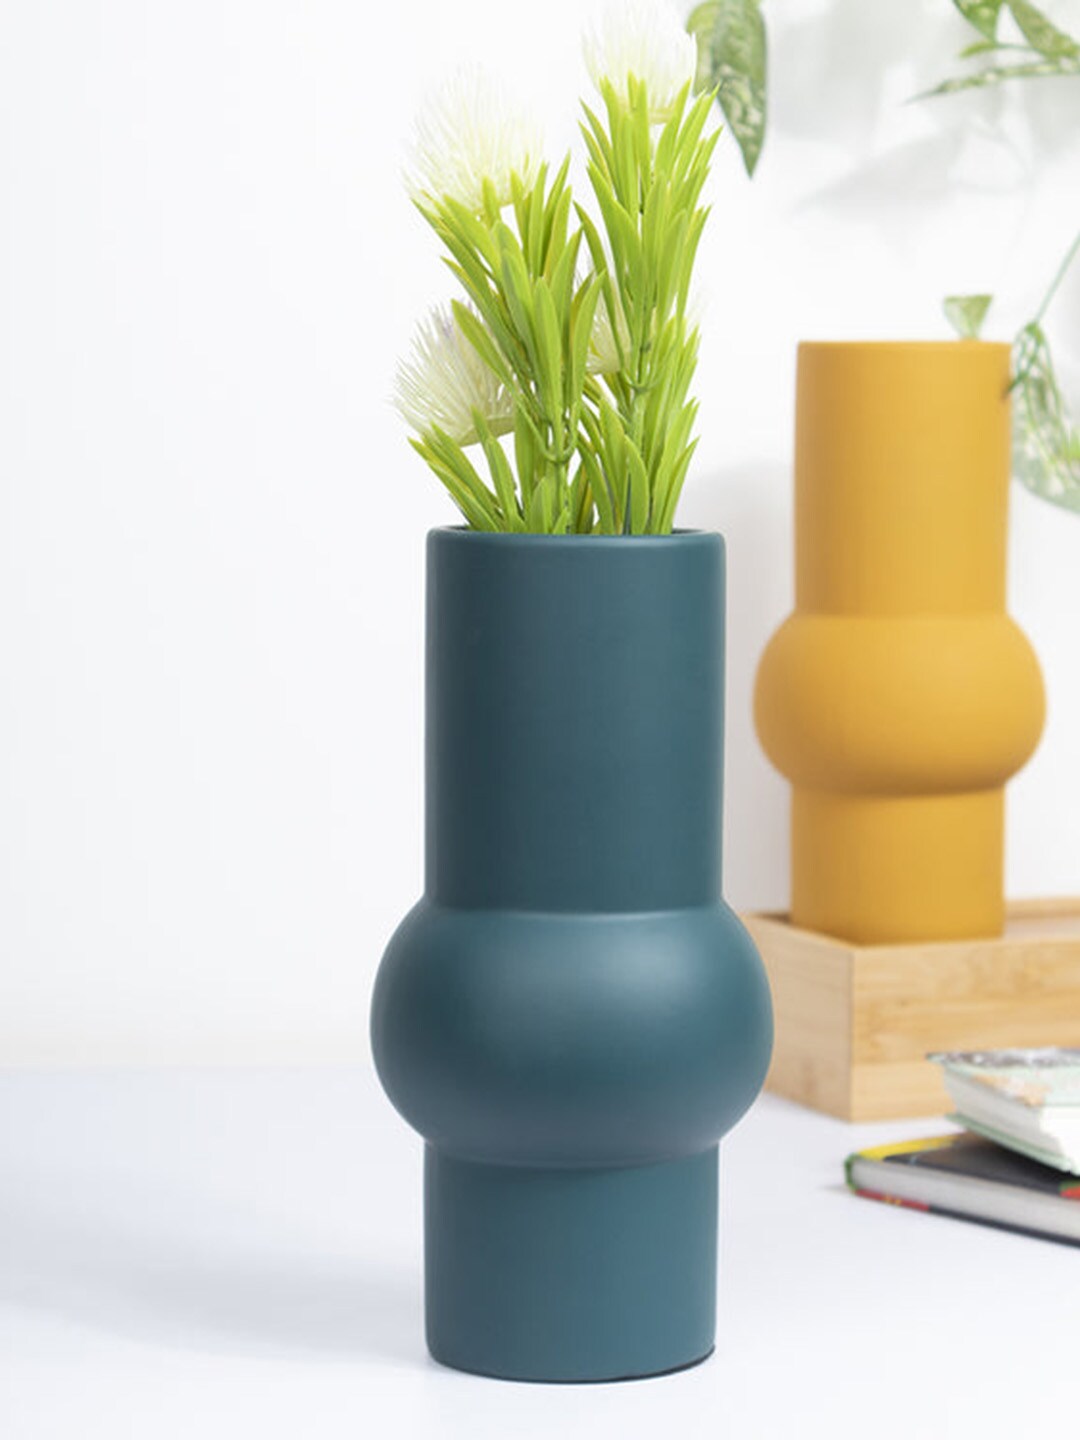 MARKET99 Green Ceramic Flower Vase Price in India